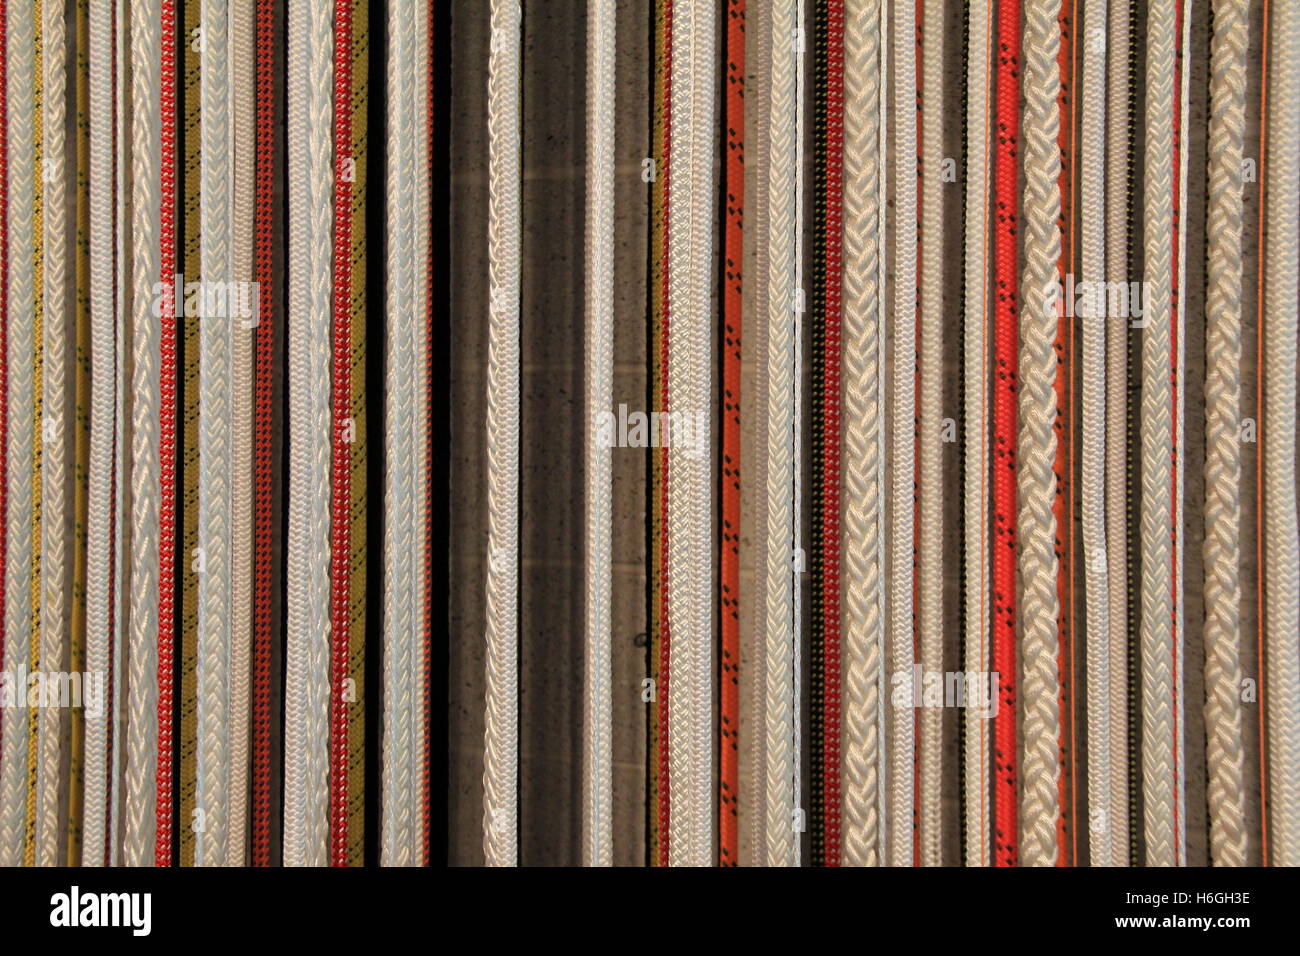 Image horizontale des lignes verticales dans des cordes tressées épaisses et fines grossières et faisant un arrière-plan unique. Banque D'Images